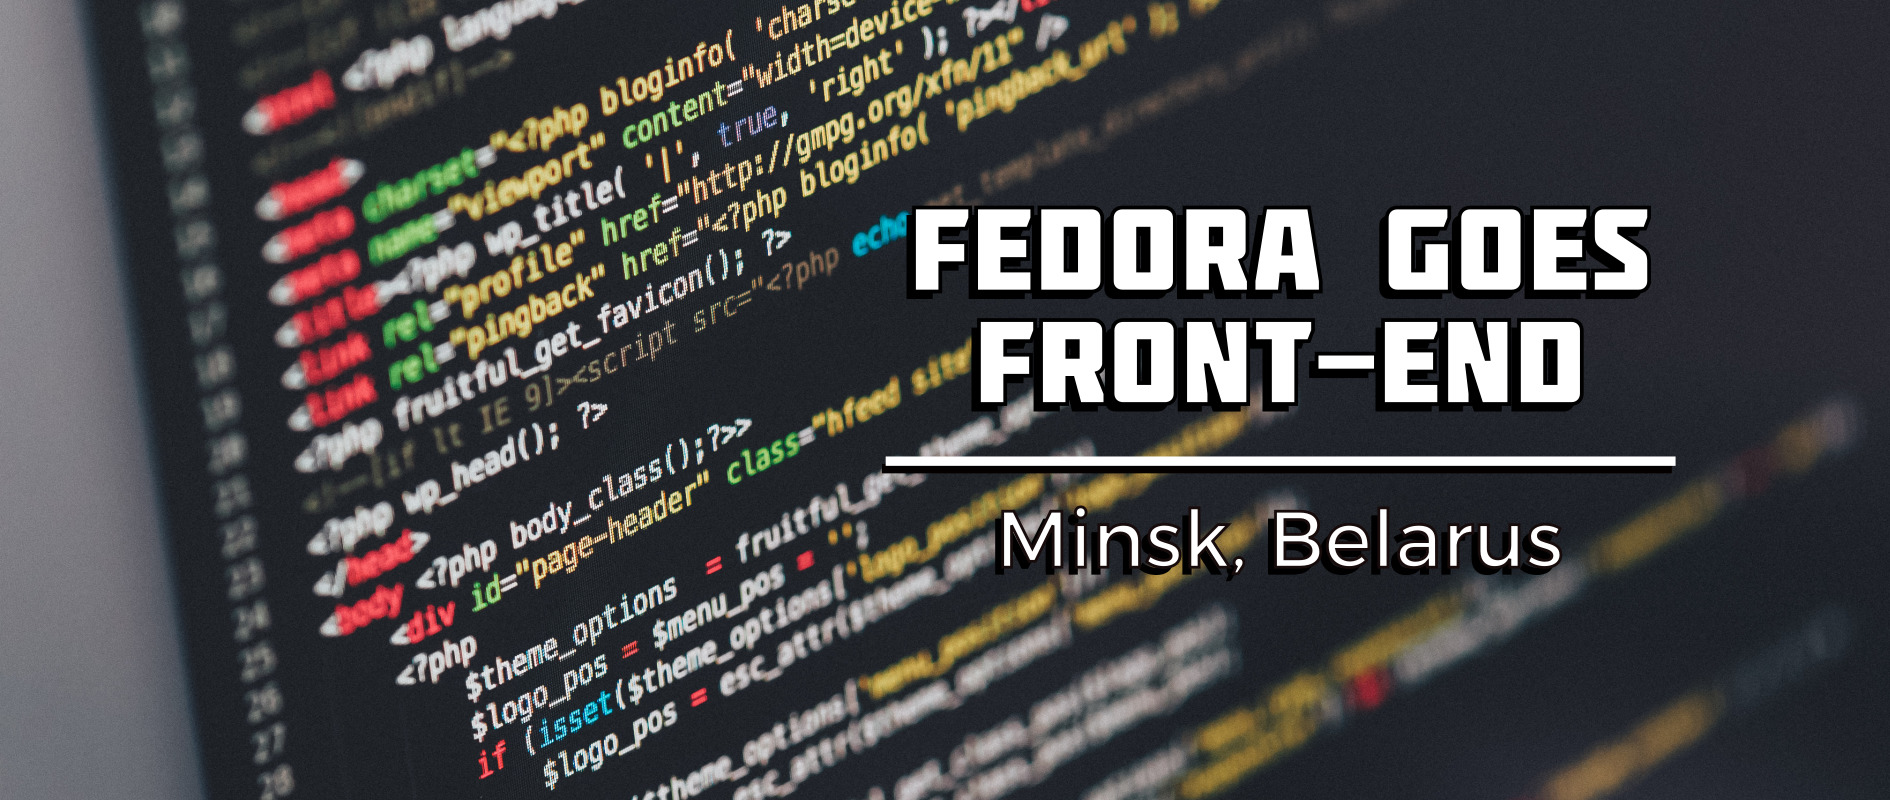 Fedora goes front-end in Minsk, Belarus